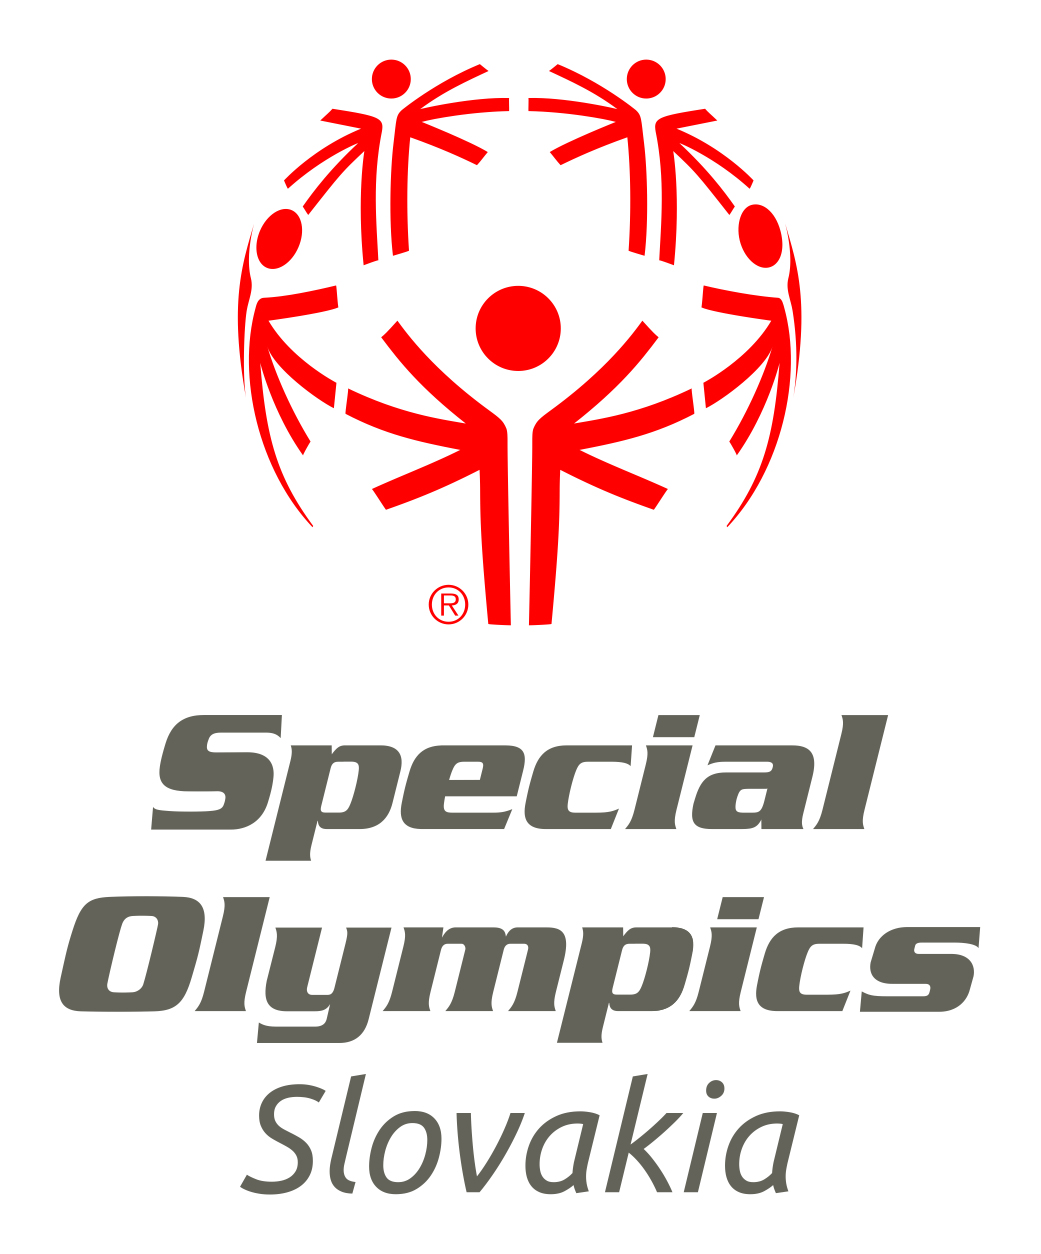 Special Olympics Slovakia